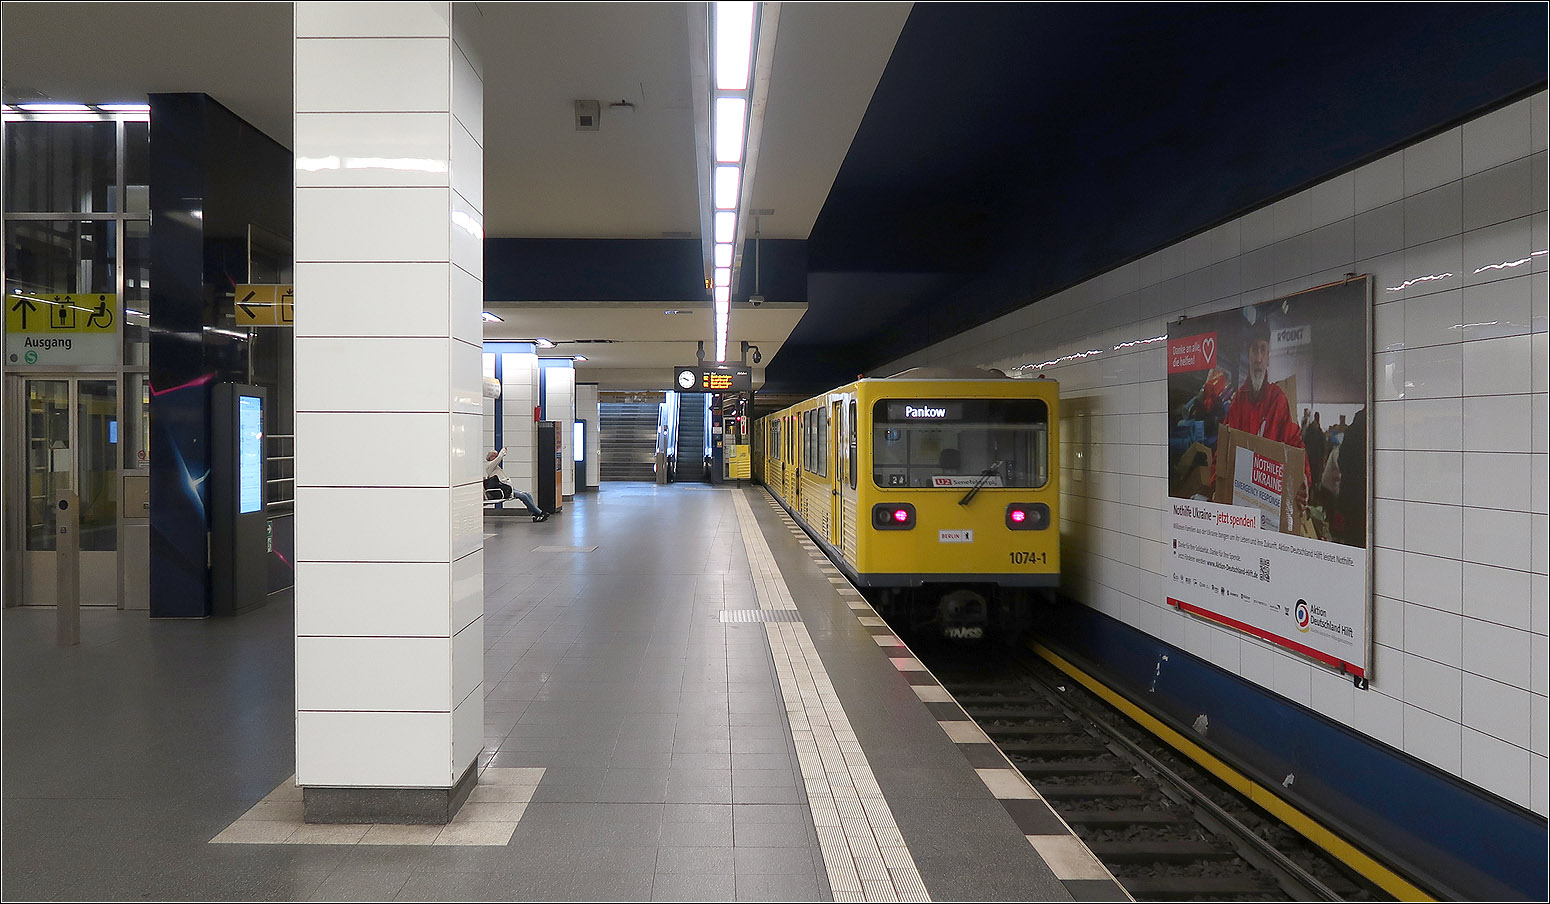 Nach 70 Jahren Wartezeit - 

... ging am 16.September 2000 die kurze Verlängerung der U2 von der seit 1930 bestehenden Staion Vinatastraße zum S-Bahnhof Pankow nach drei Jahren Bauzeit in Betrieb. In den 1930iger Jahren verhinderte die Weltwirtschaftskrise den Weiterbau der Strecke. 

Im Bild ein Zug der G-Reihe (LEW Henningsdorf), eine DDR-Entwicklung der 1970iger Jahre. Solche Wagen wurden von von 1983 bis 1985 an Athen für den Betrieb der heutigen Metrolinie 1 ausgeliehen. Diese gingen wieder nach Berlin zurück und wurden 1997 nach Nordkorea verkauft für die Metro in Pjöngjang.
Athen bestellte für ihre Linie eine weiterentwickelte Version, die als GIII bezeichnet wird bei MAN/LEW Henningsdorf. Ein deutsch/deutsche Gemeinschaftsentwicklung also.

14.07.2023 (M)

